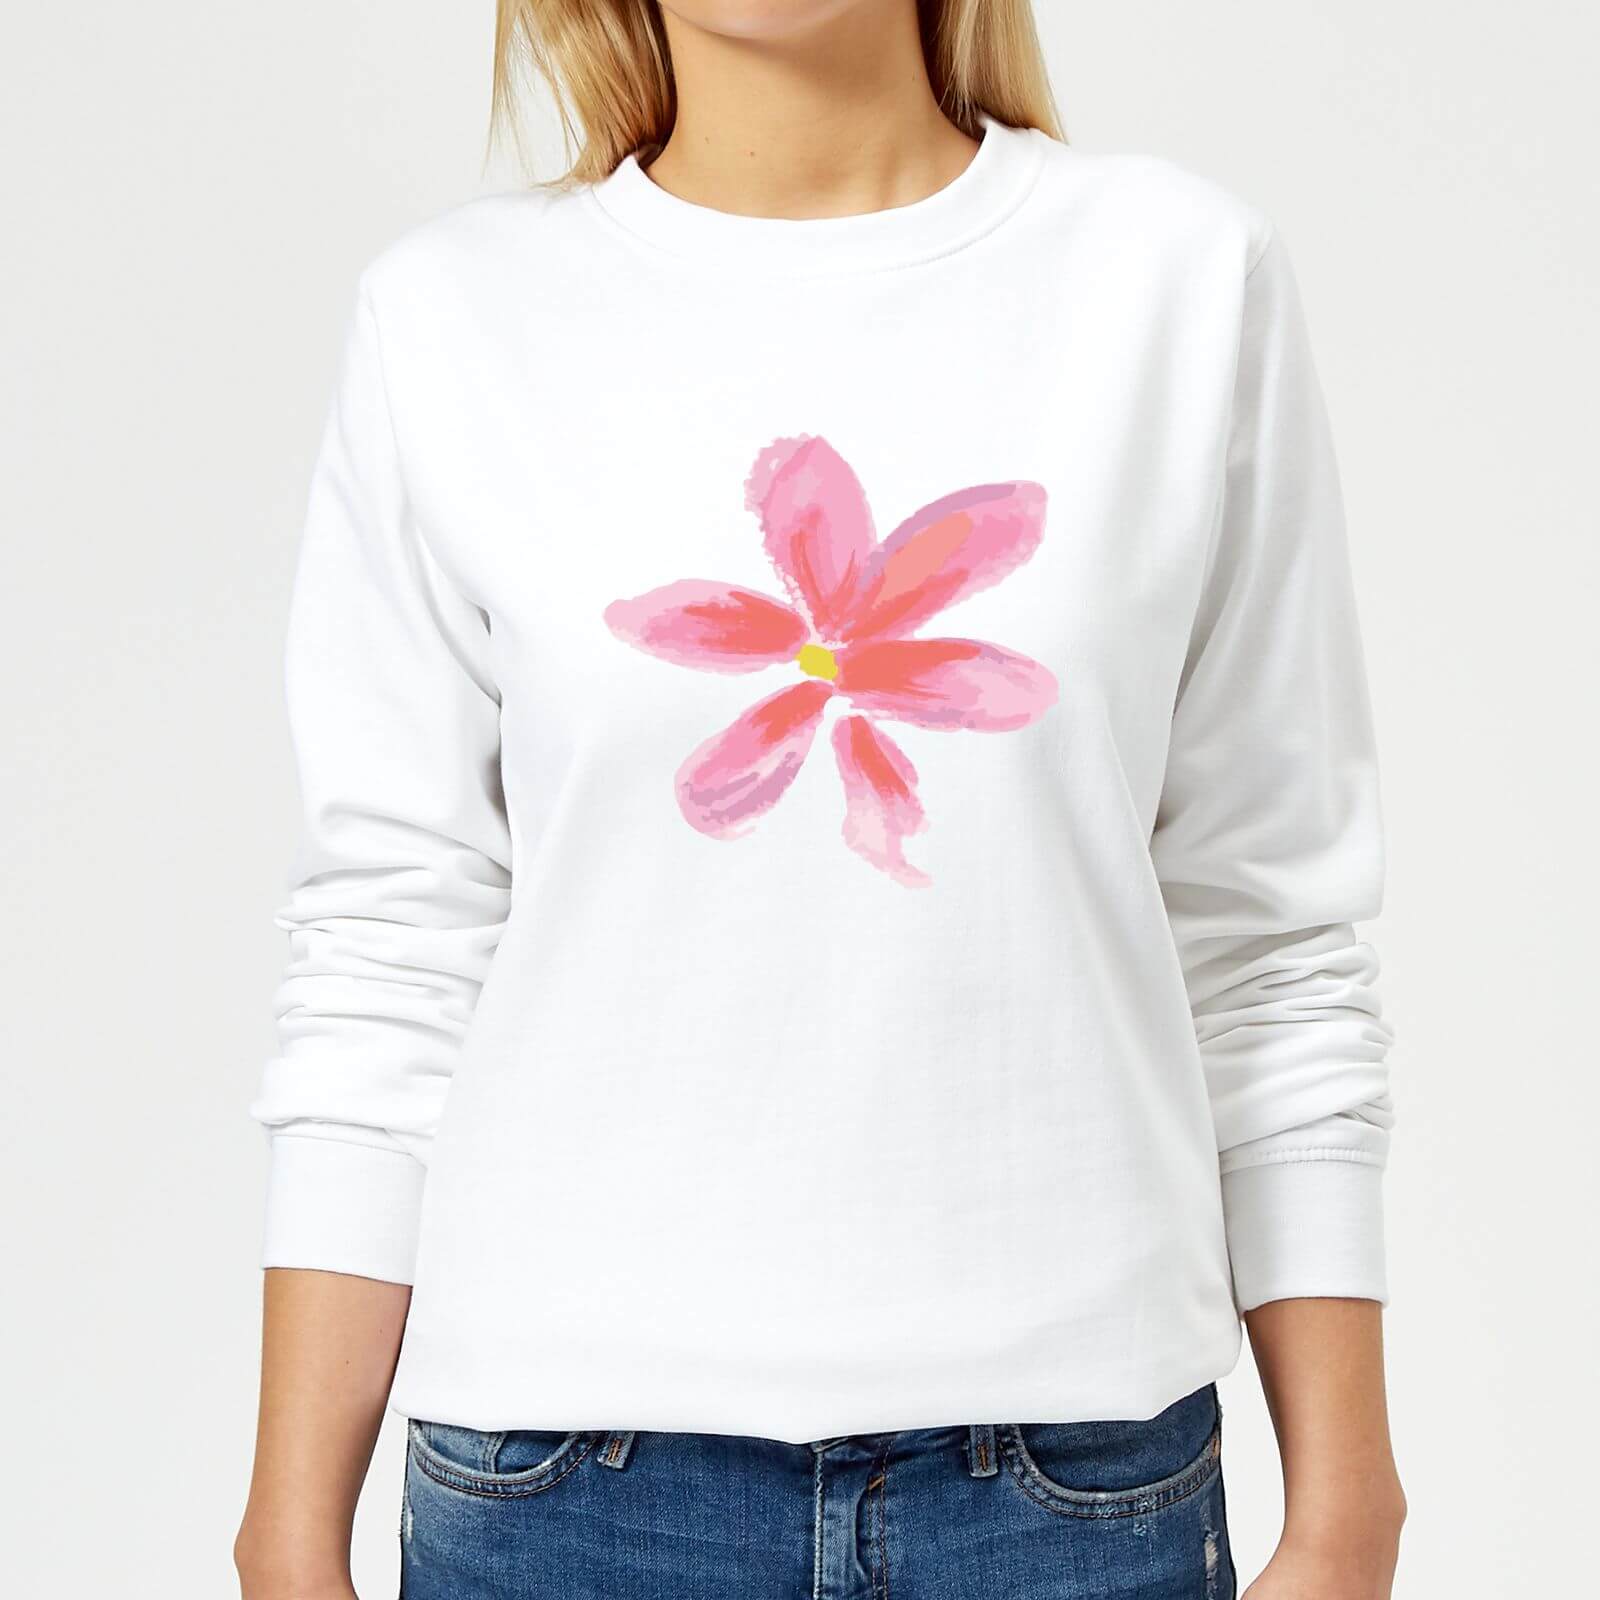 Flower 2 Women's Sweatshirt - White - XS - White